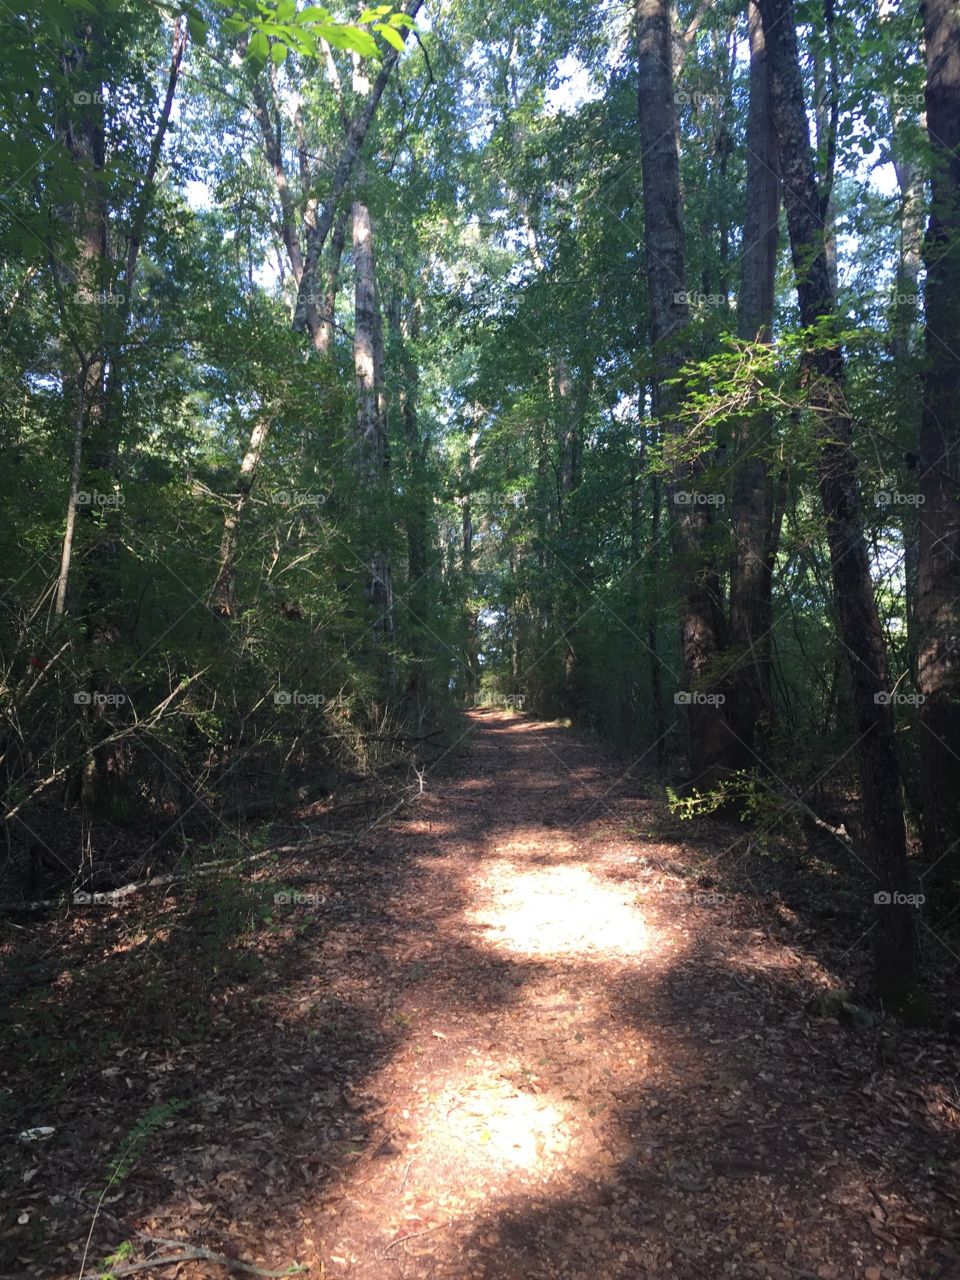 guiding light through the trails